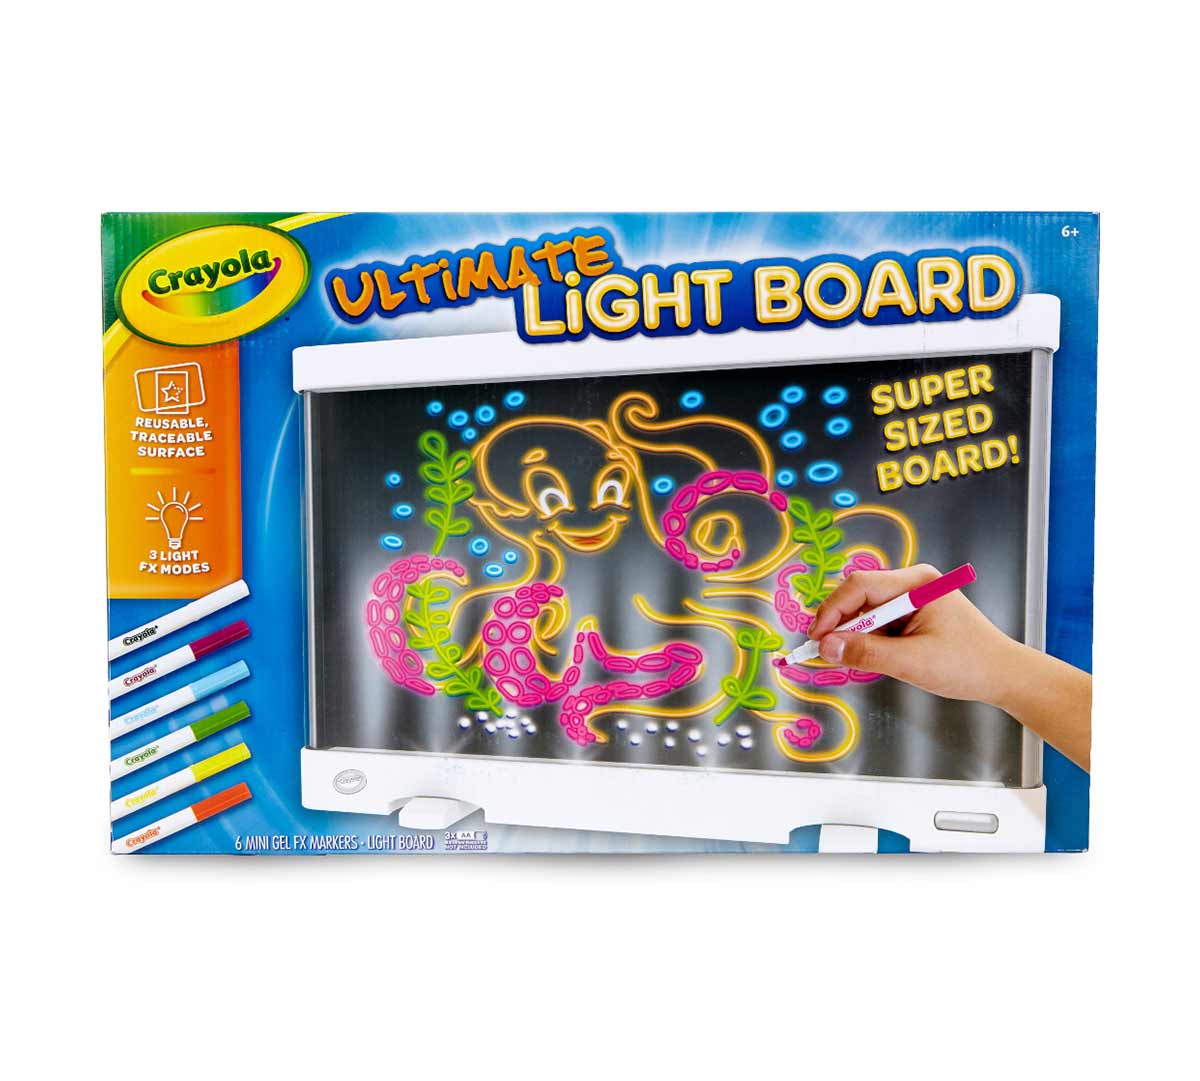 Super board песня. Crayola планшет для рисования. Super Board. Light Board. Рисование песком планшет Crayola для чистюль отзывы.